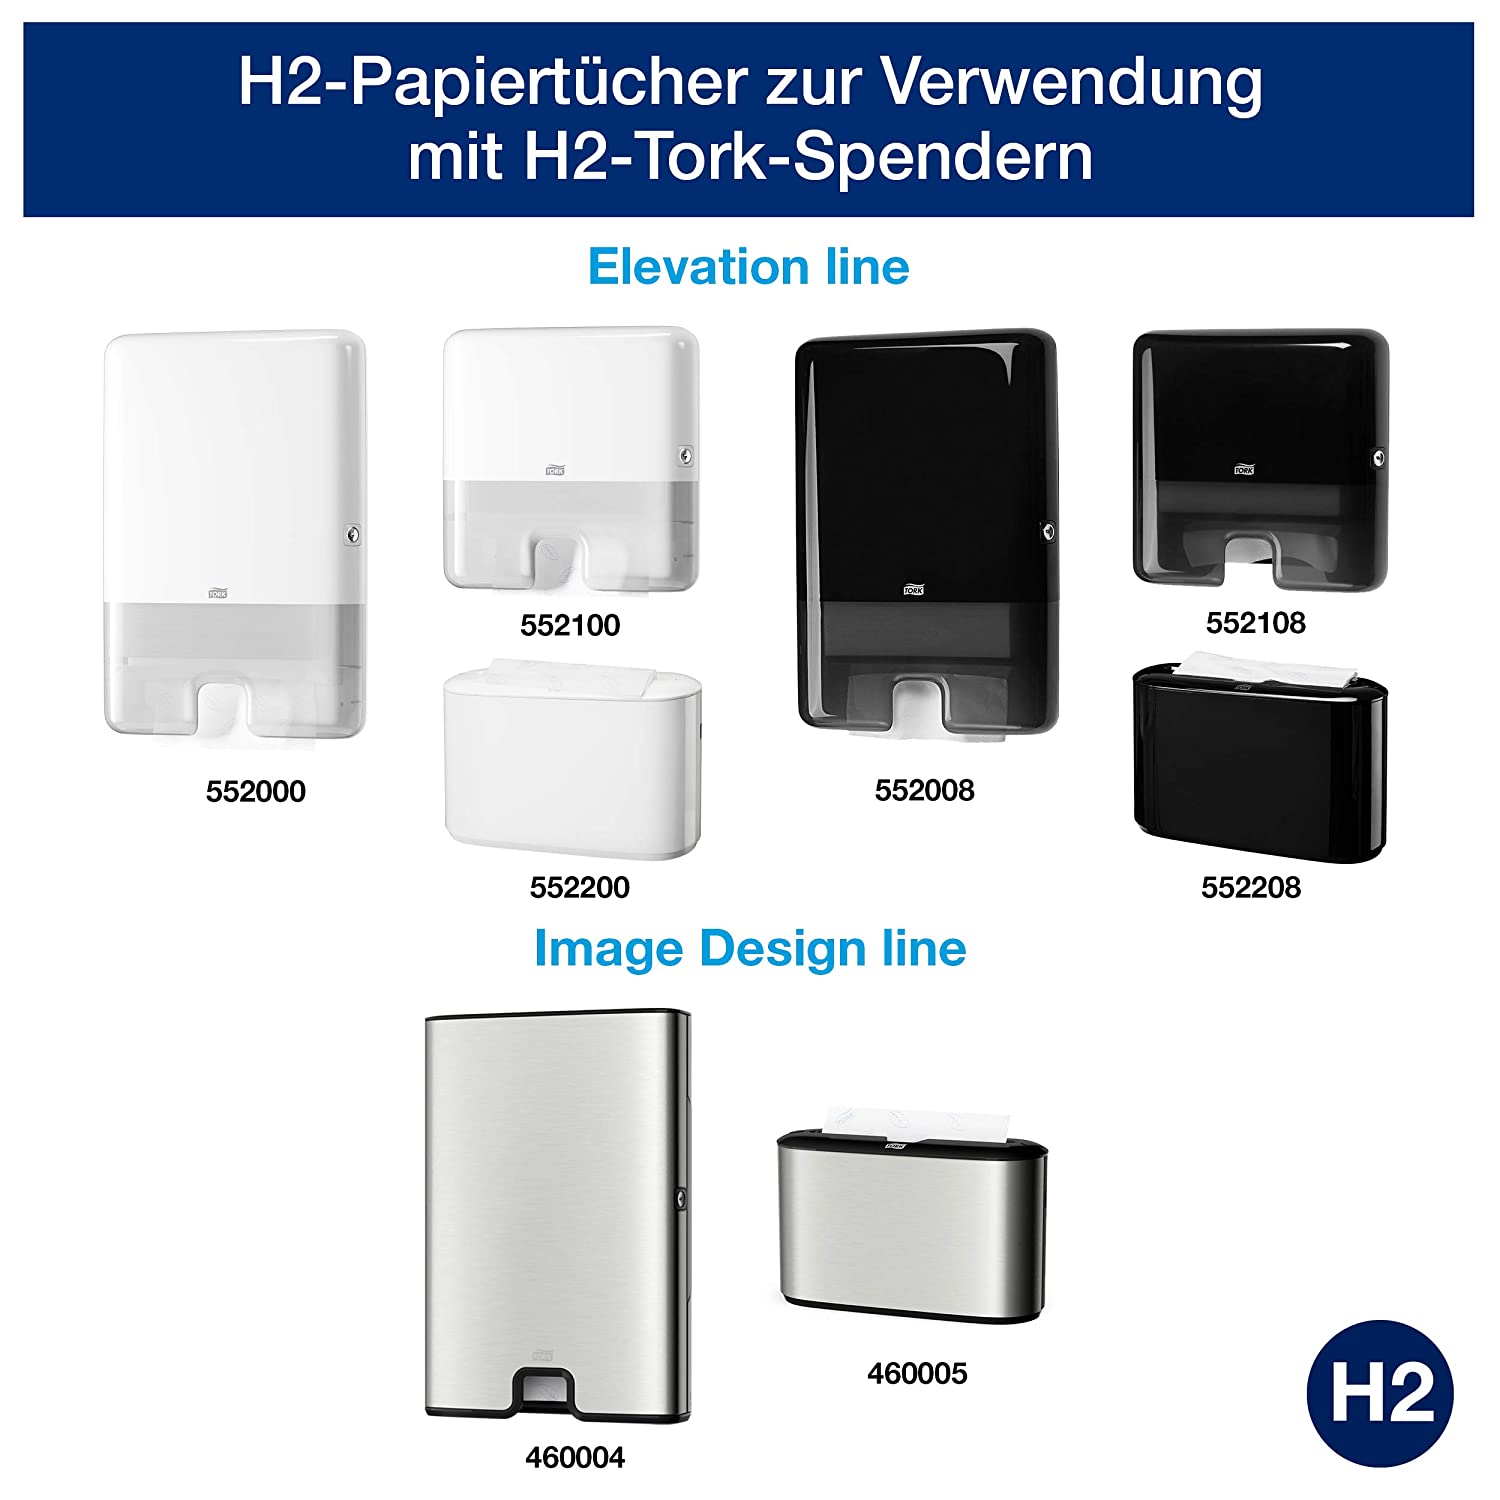 TORK Papierhandtücher 129089 Xpress H2 Advanced schnellauflösend Interfold-Falzung 2-lagig 4.200 Tücher - Weiss